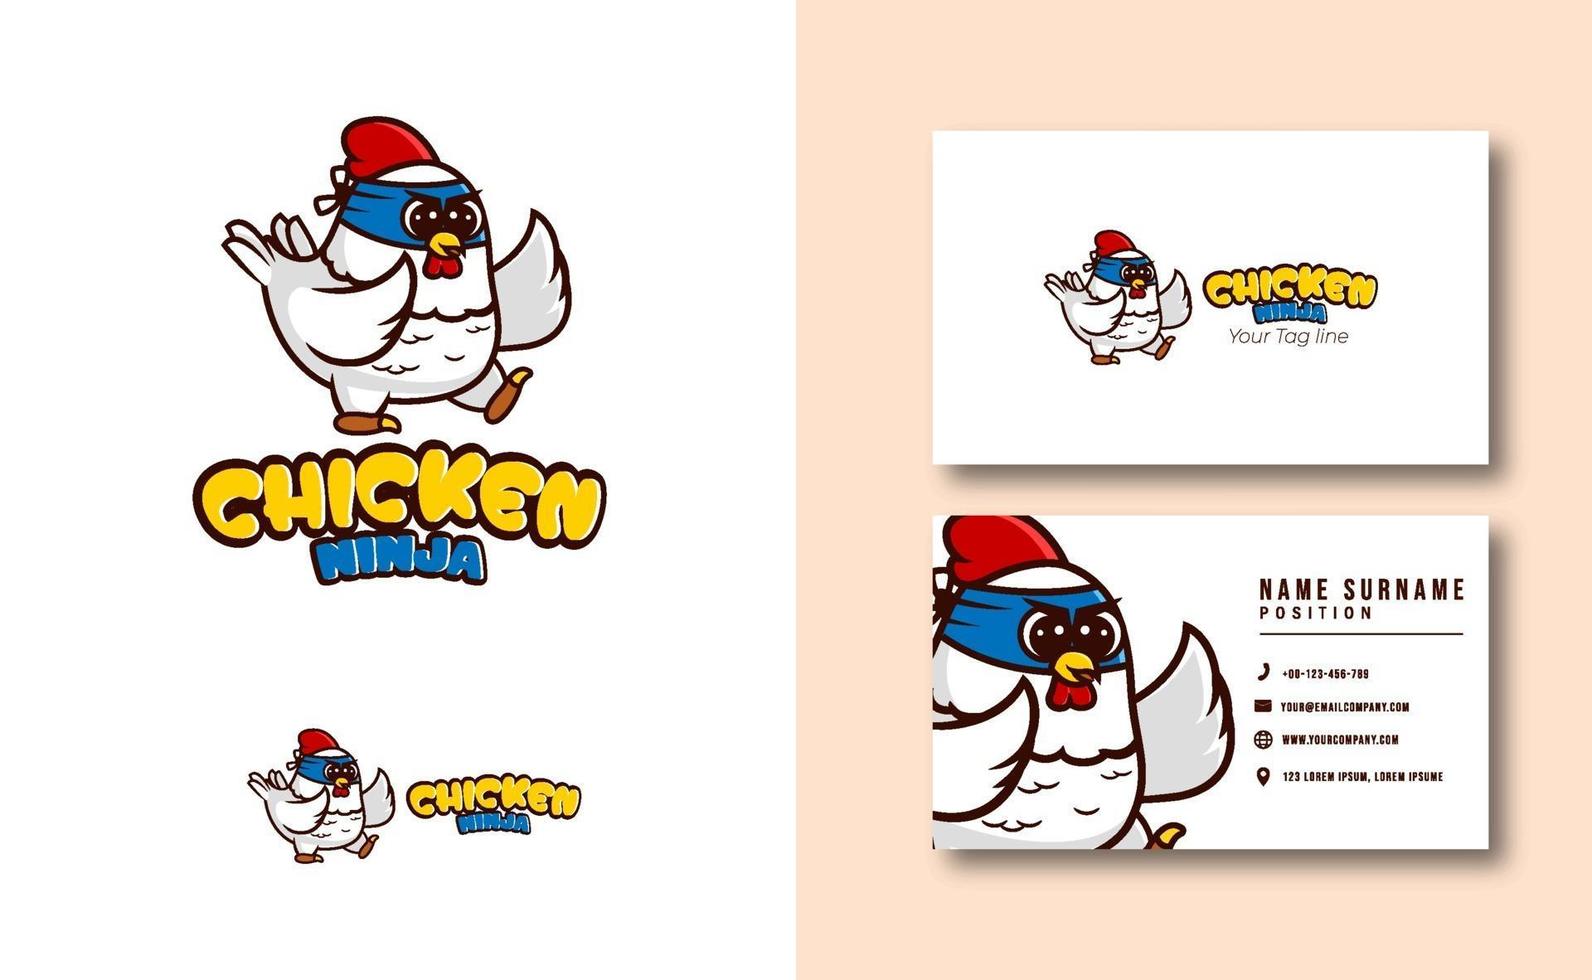 Cute chicken ninja mascot logo business card template vector